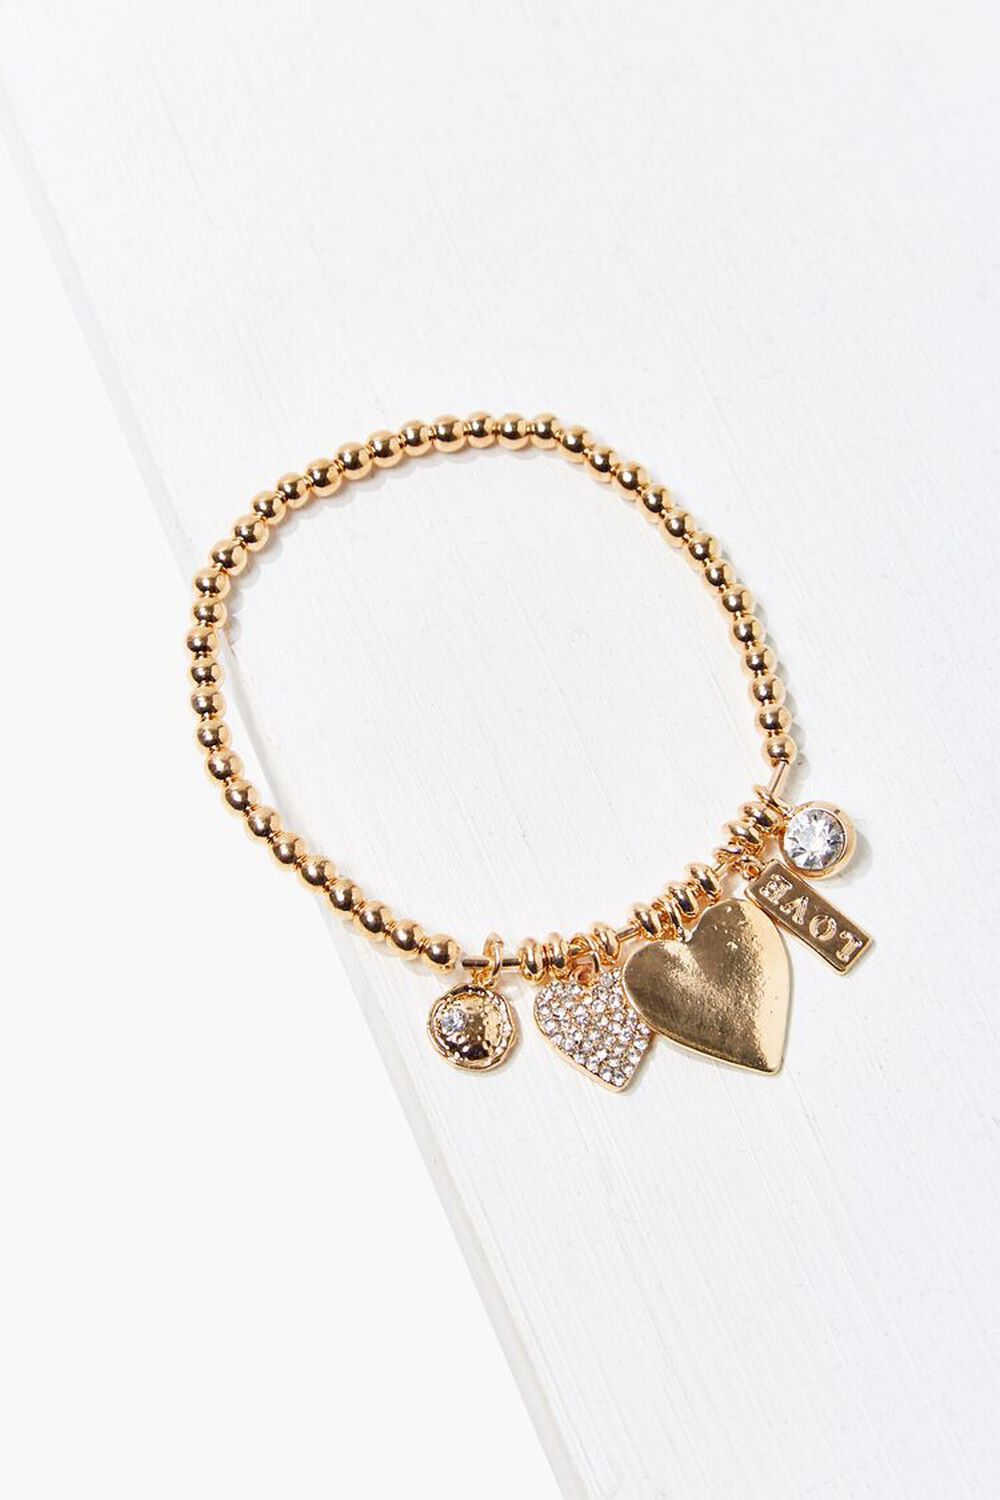 GOLD Beaded Heart Charm Bracelet, image 1